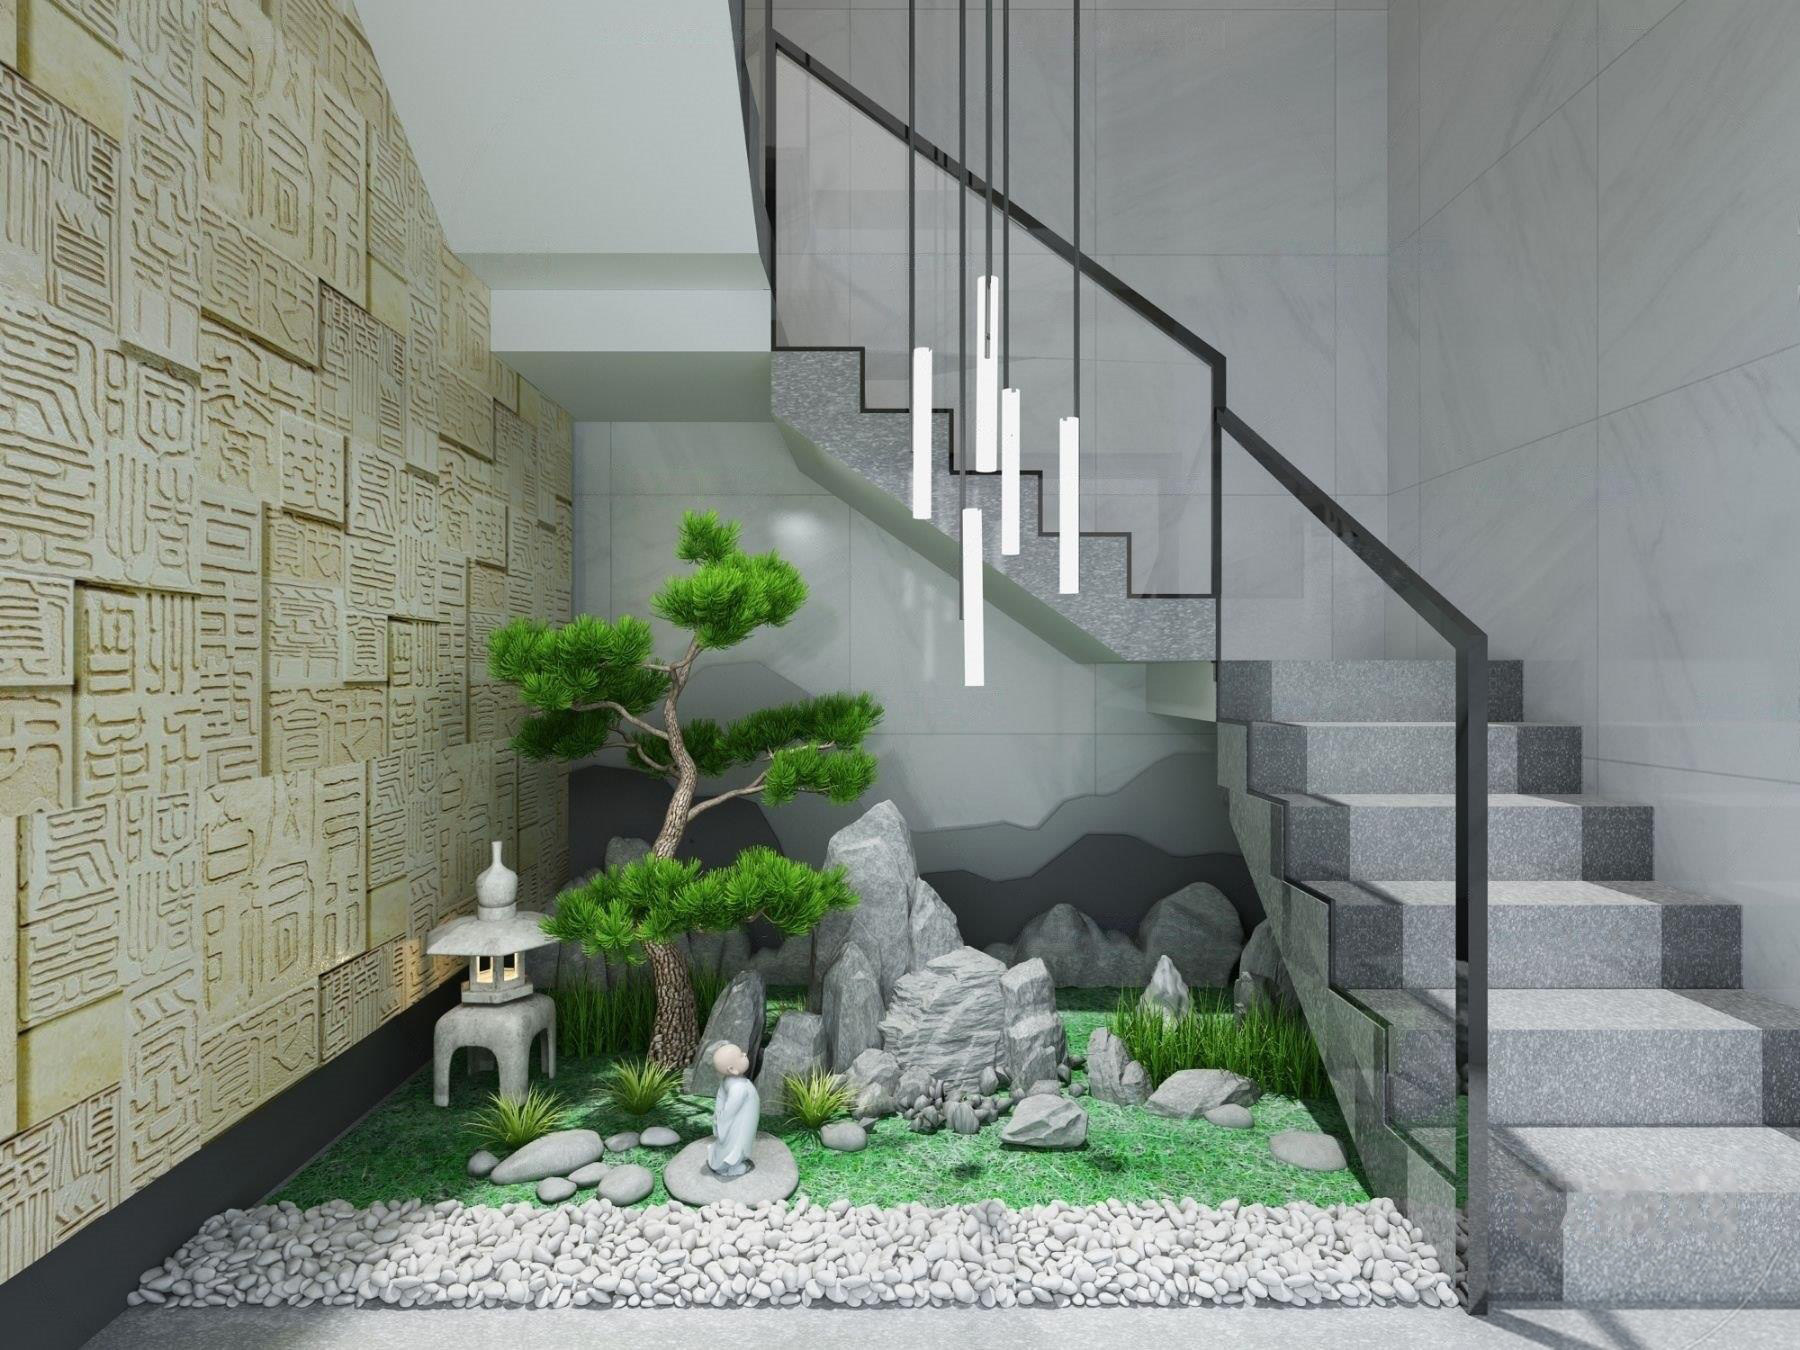 新中式楼梯间景观小品3d模型下载